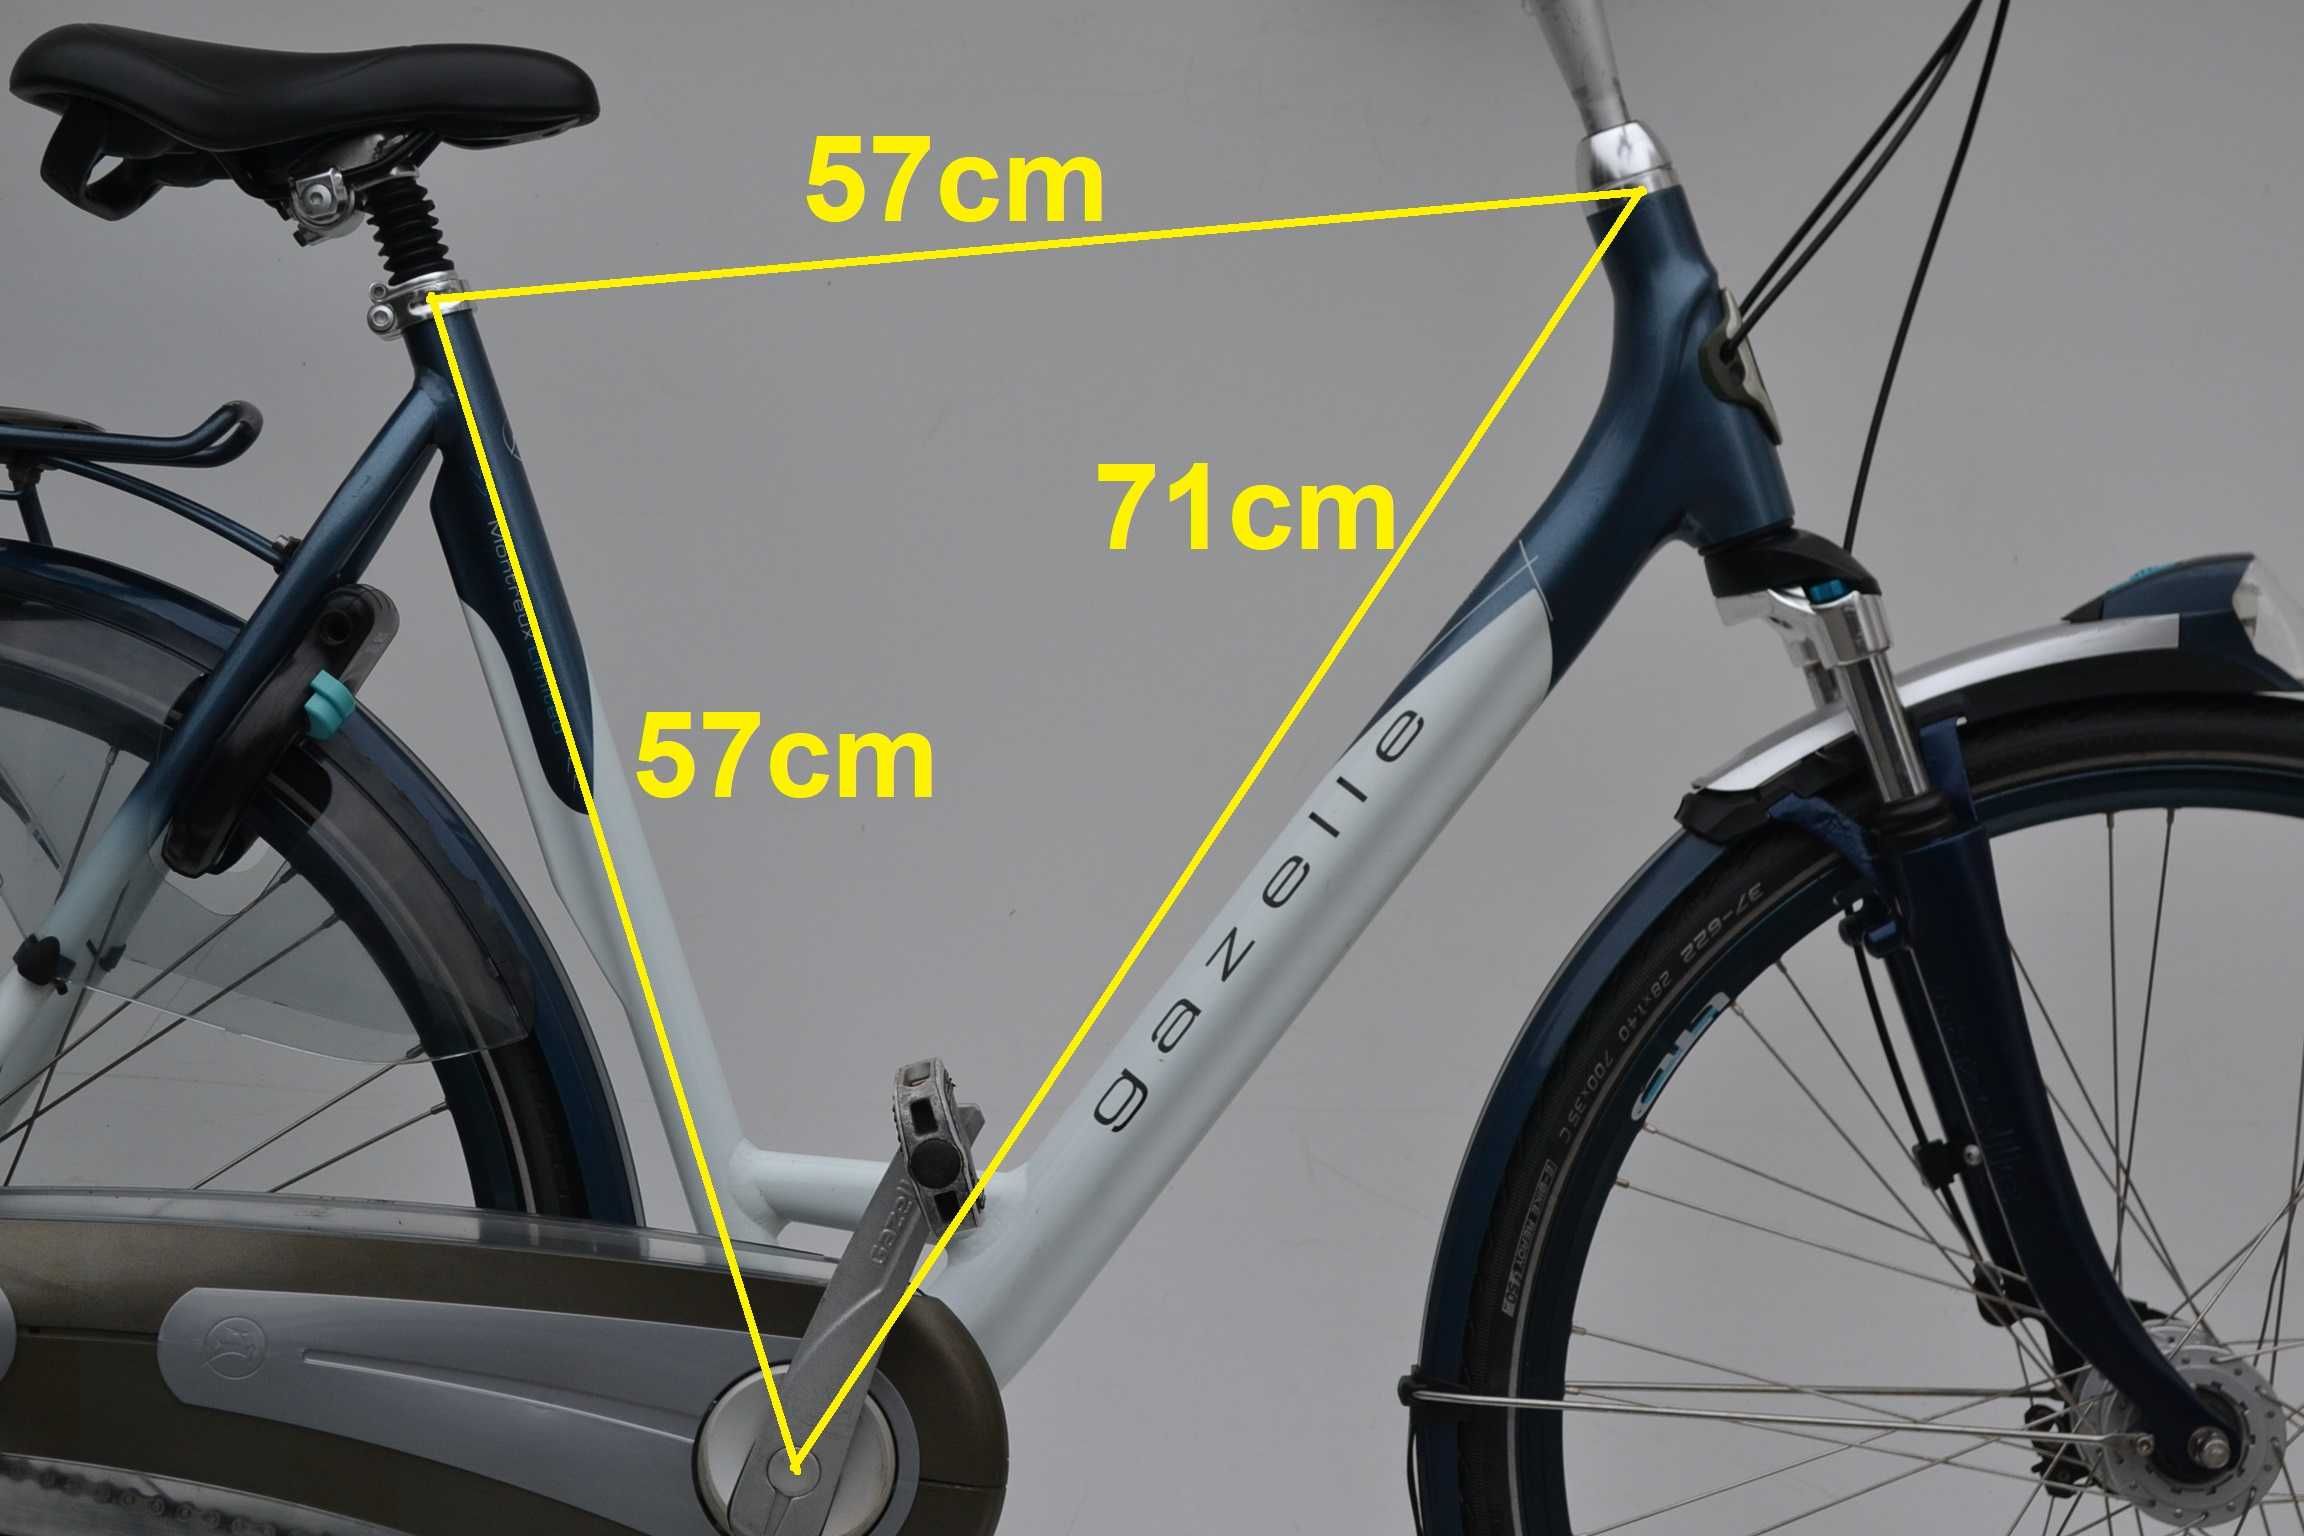 Gazelle Montreux koła 28 57cm * rower miejski holender nawyższa jakość